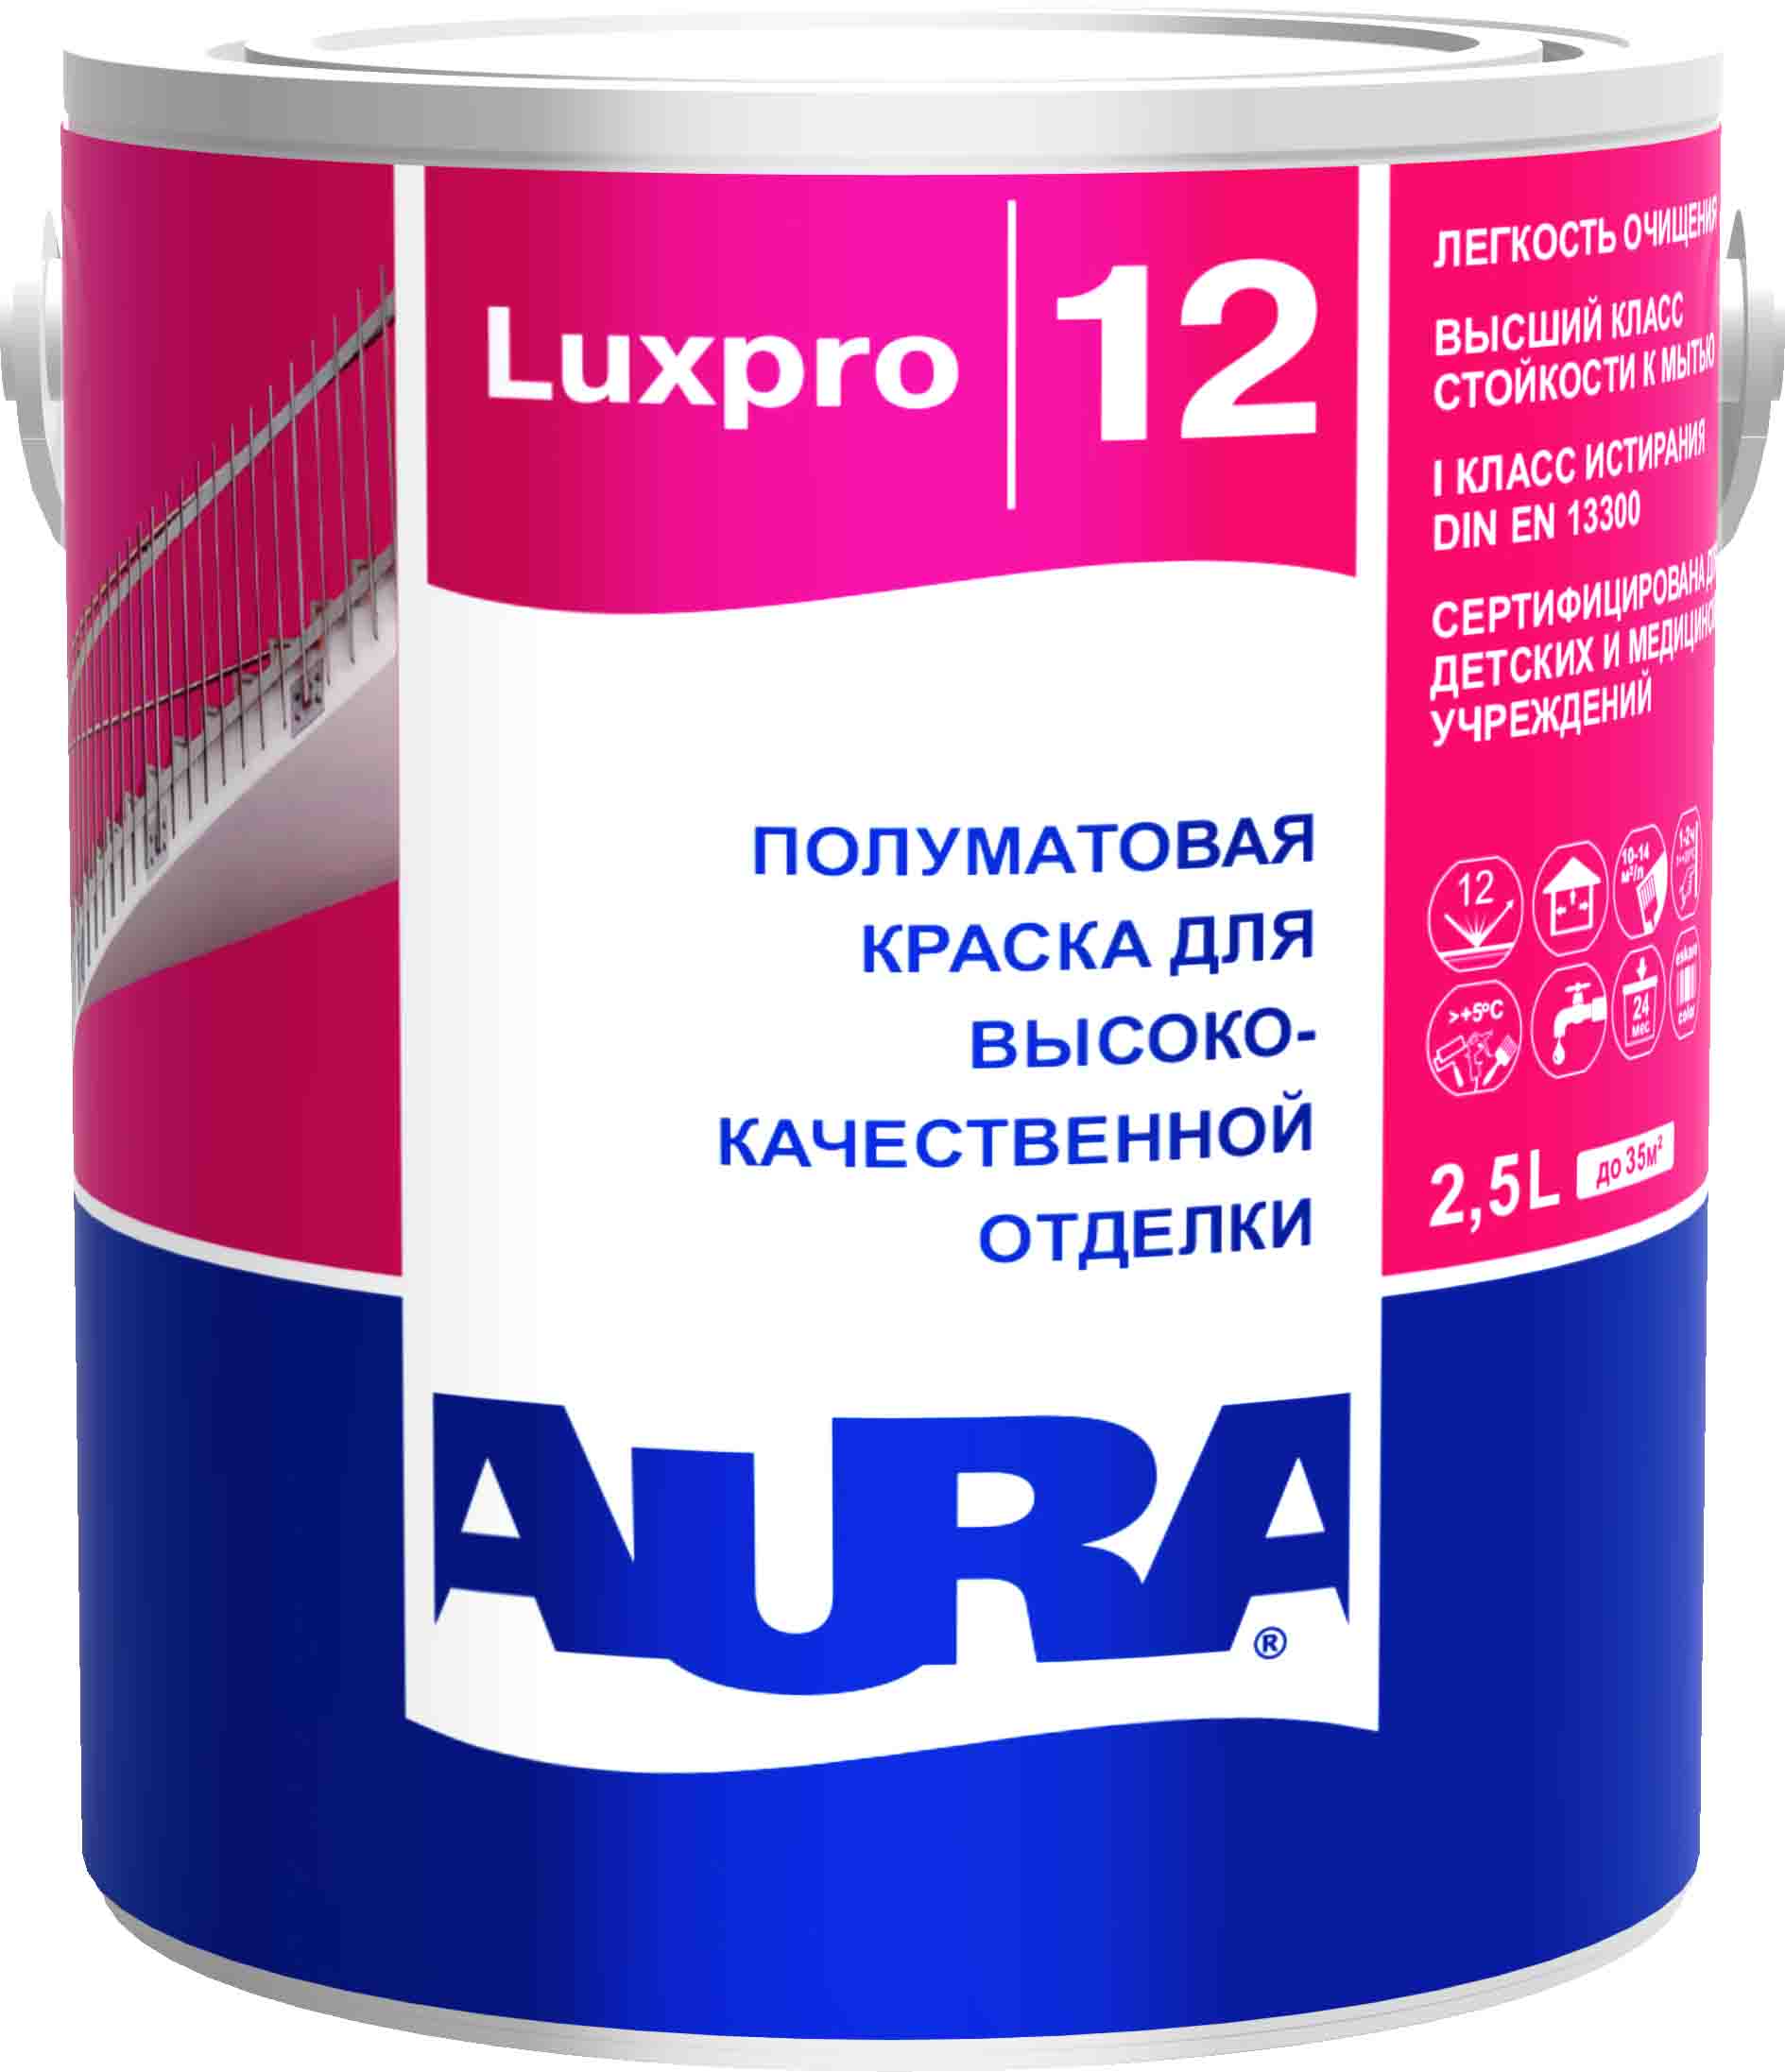 Полуматовая краска AURA LUXPRO 12, 2,5 л